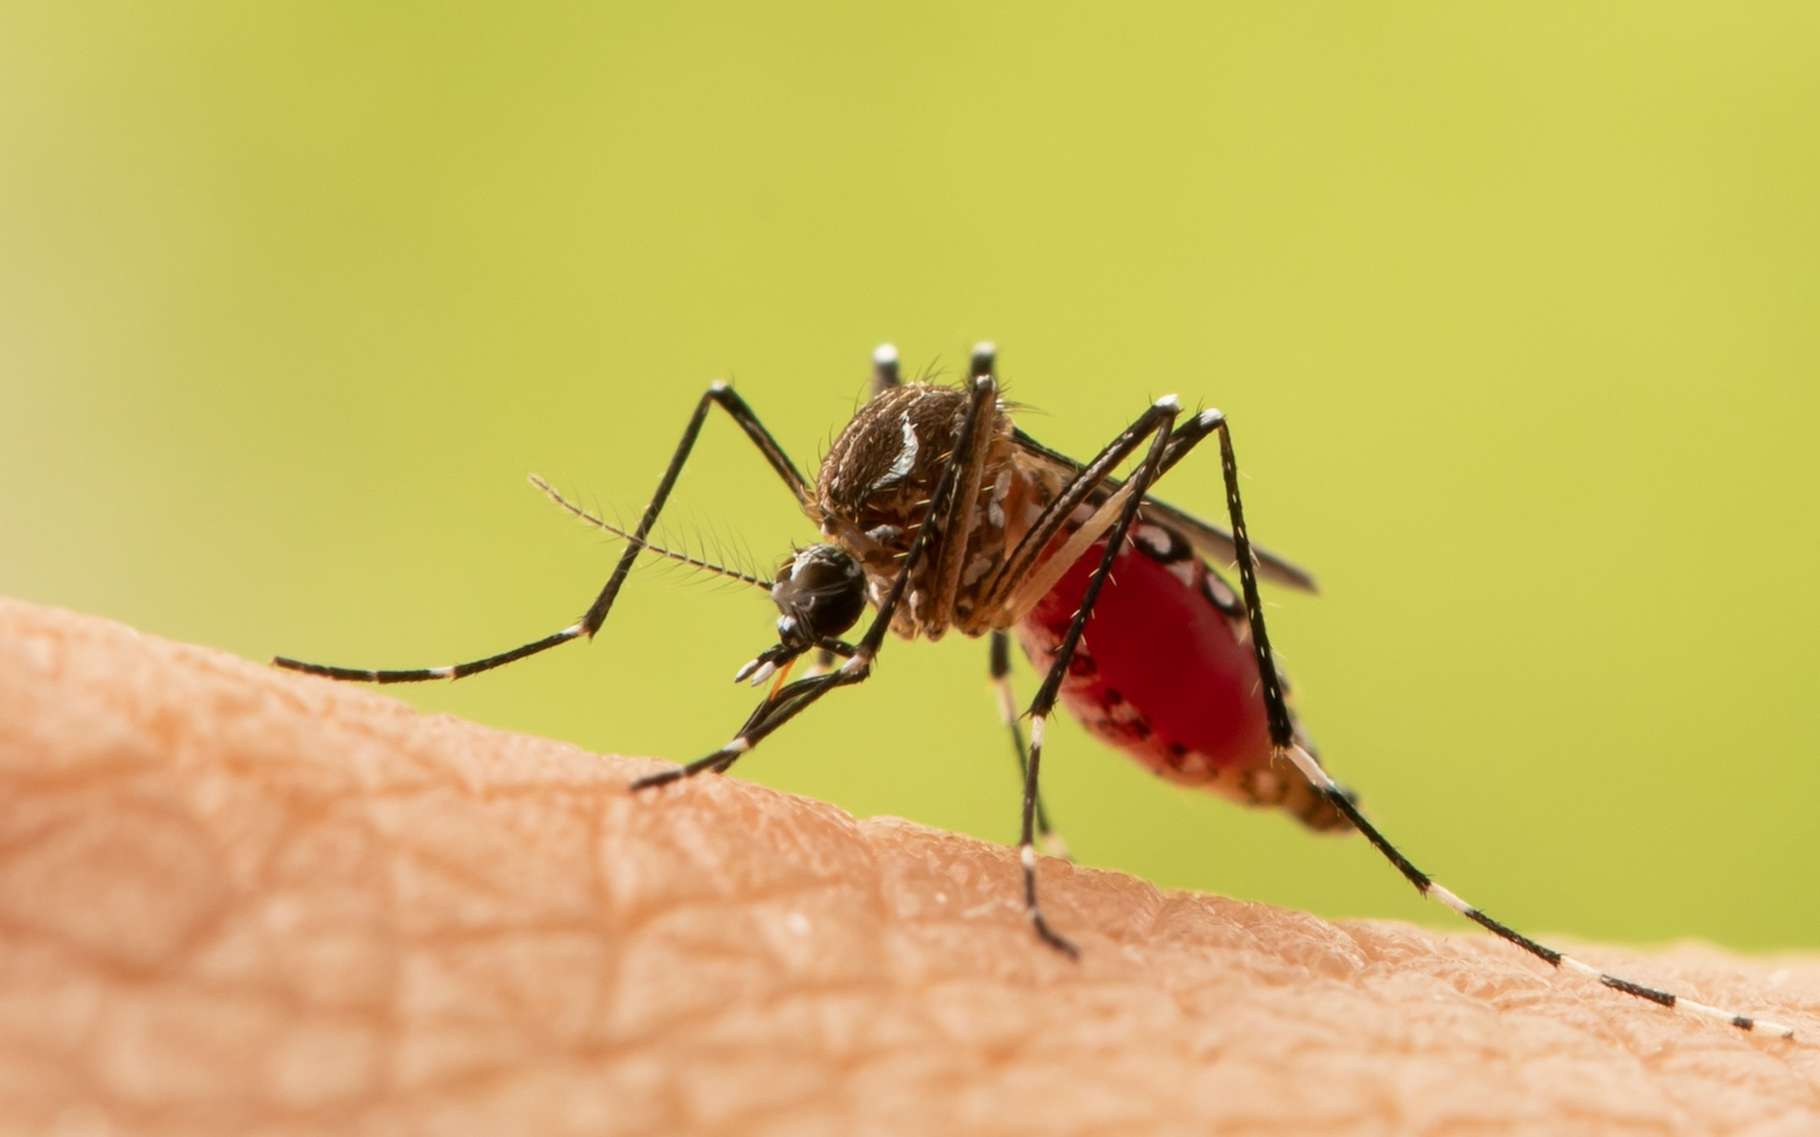 Les moustiques vieillissent plus vite et ce n'est pas une bonne nouvelle